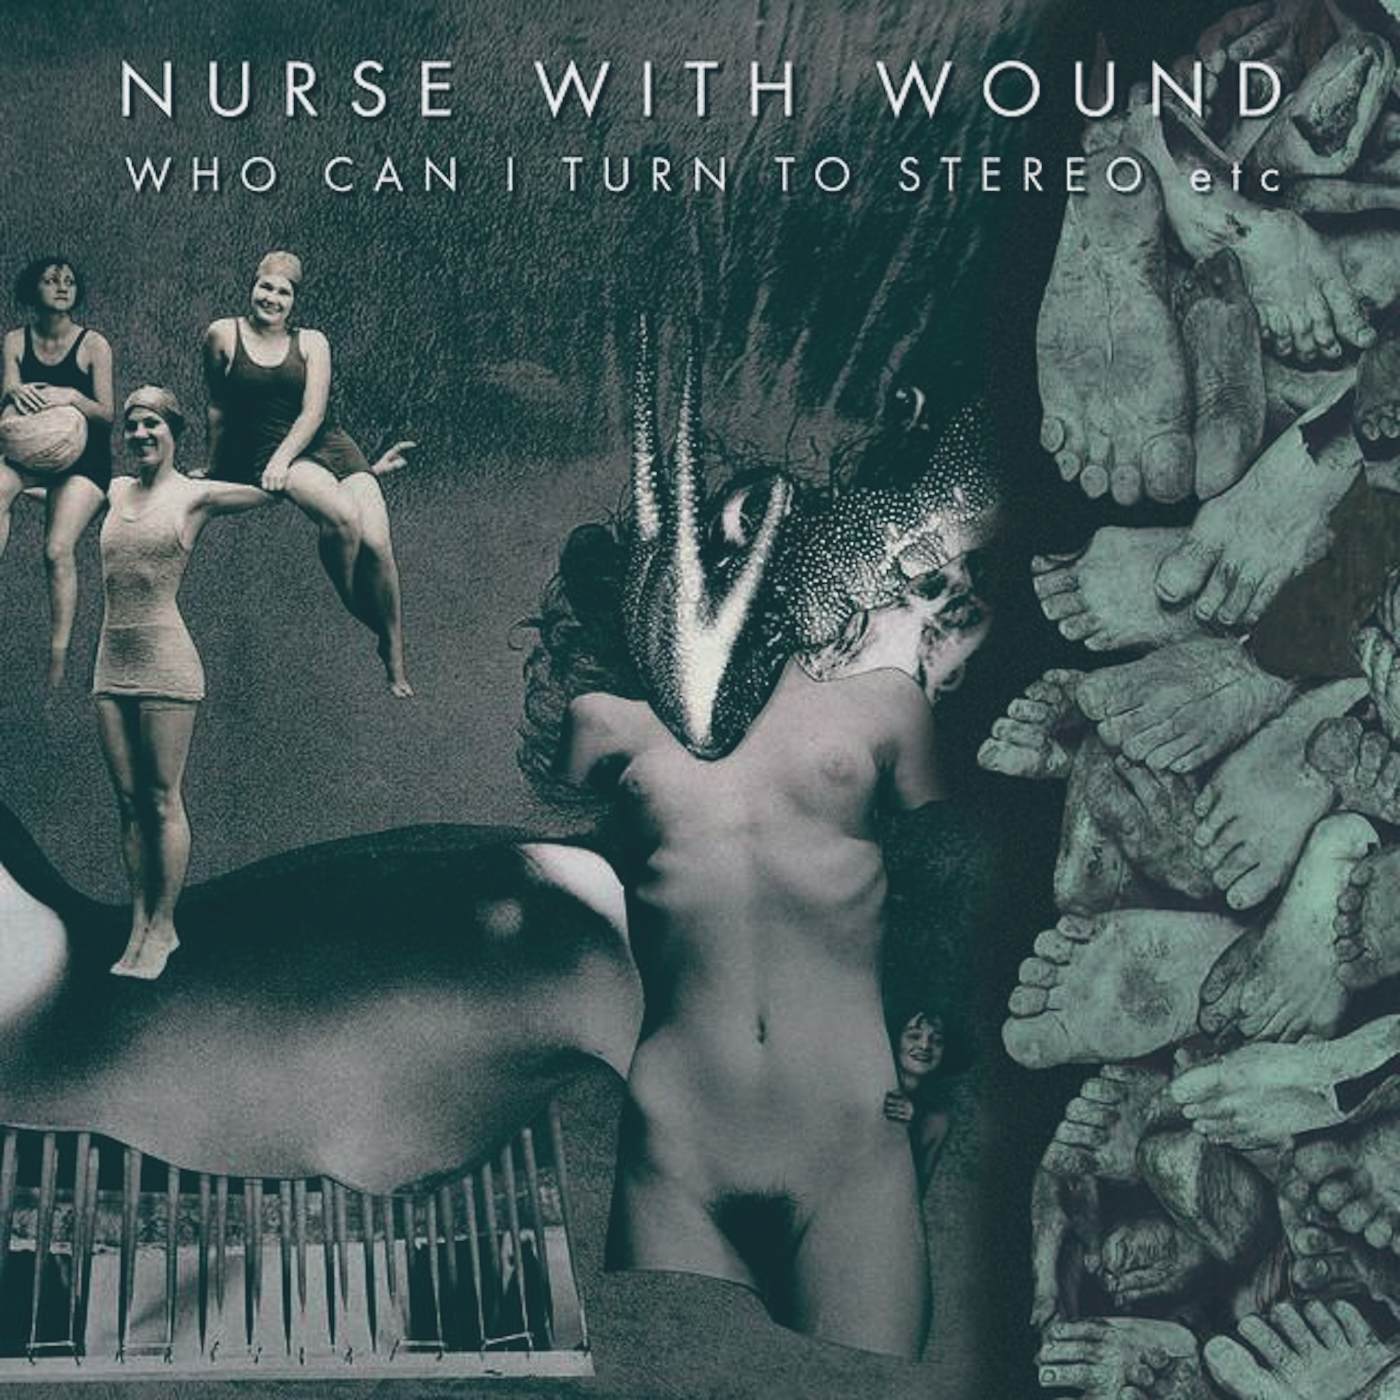 Nurse With Wound